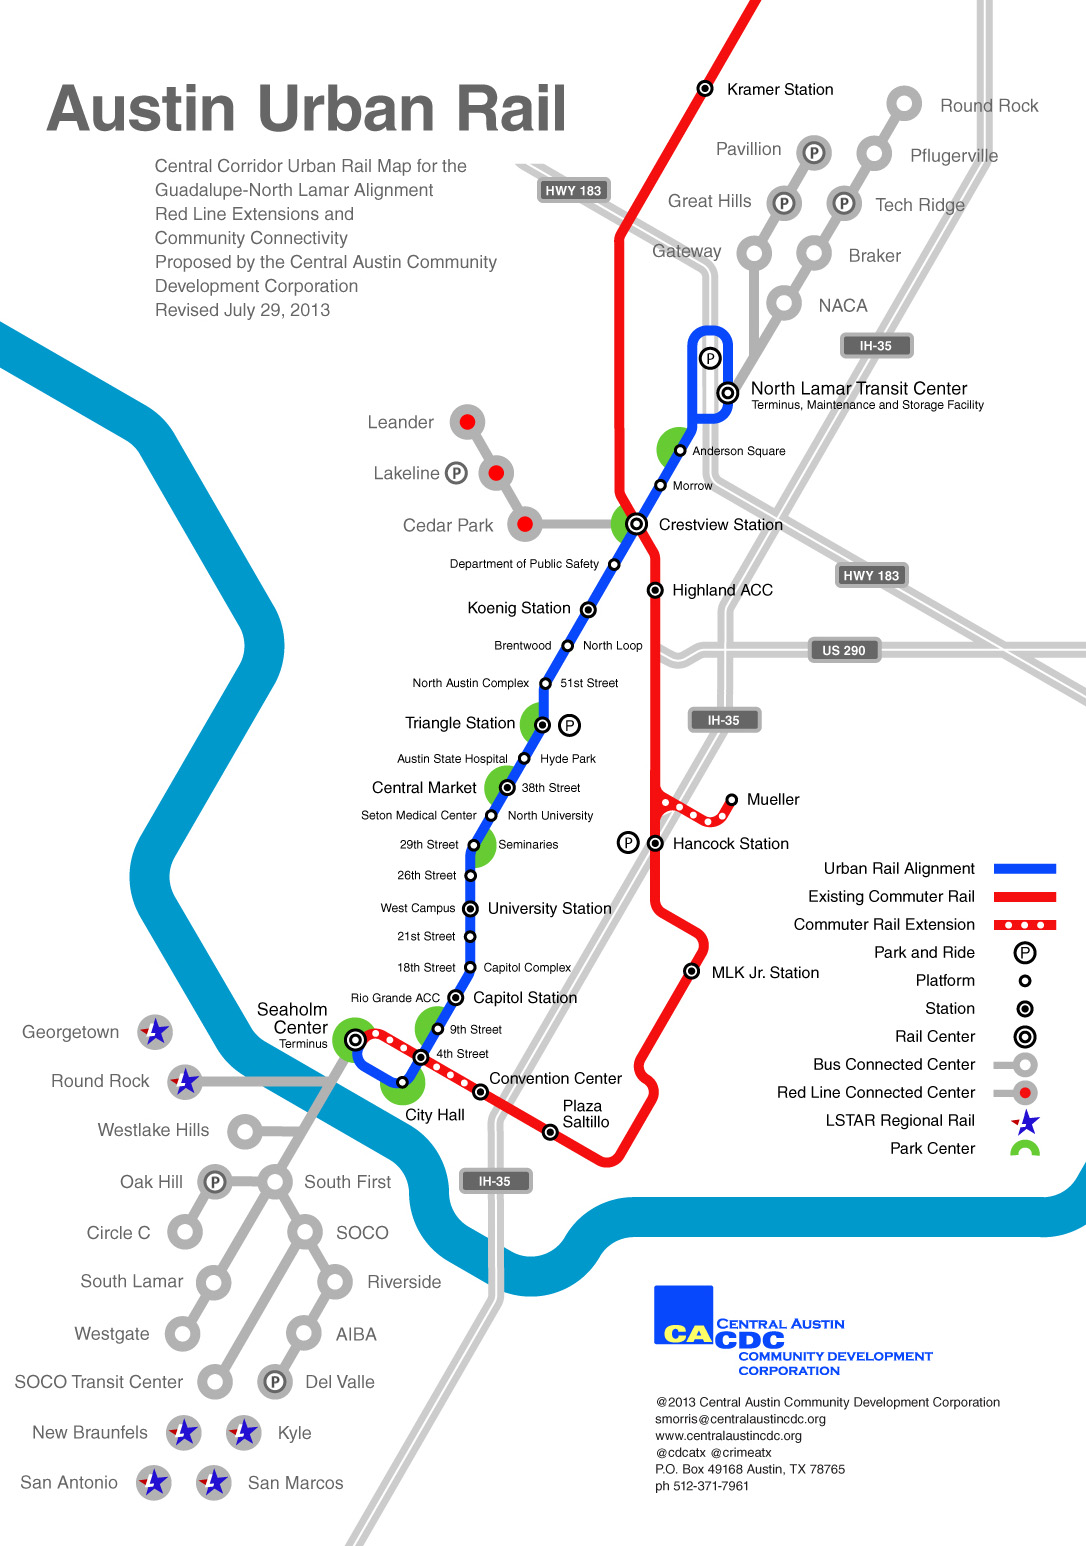 cacdc_map-austin-urban-rail-2013.jpg